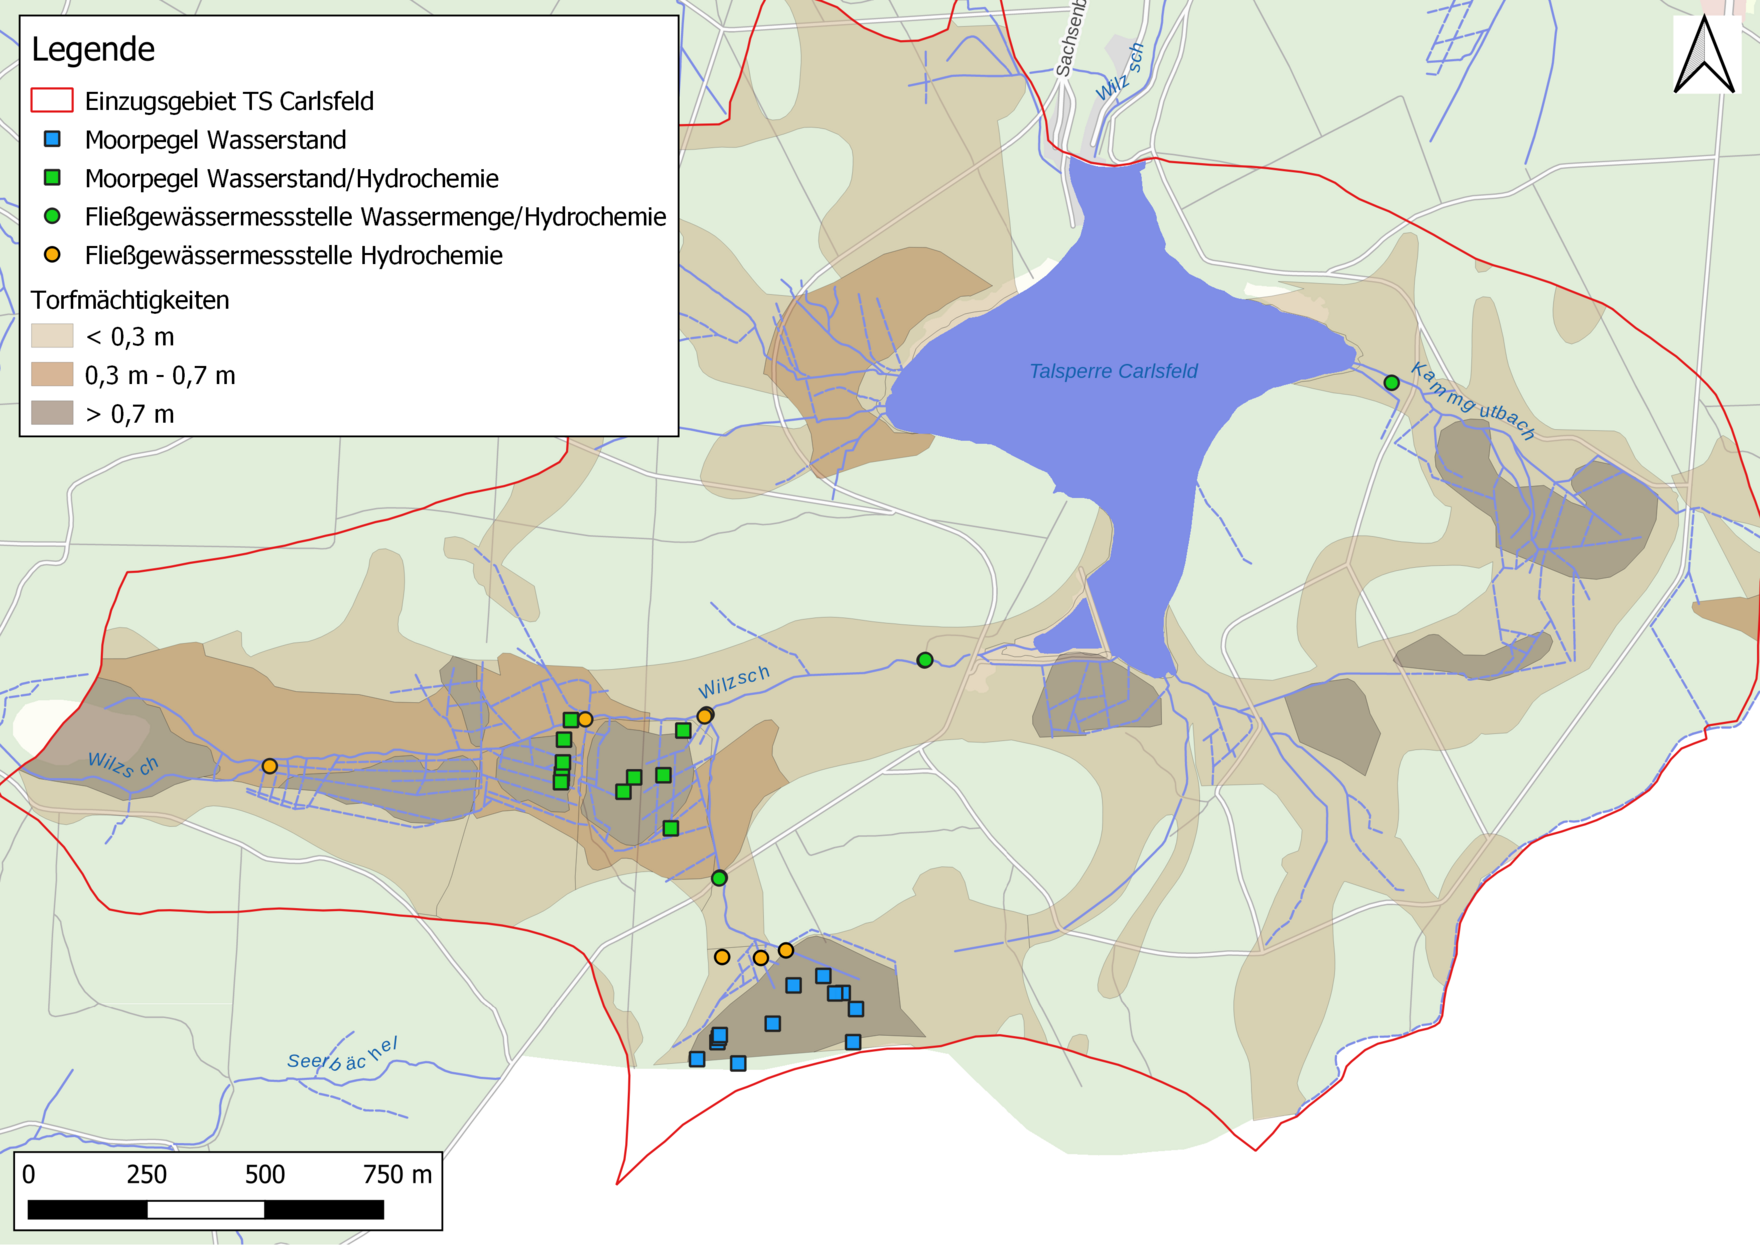 Kartenausschnitt mit dem markierten Einzusggebiet der Talsperre Carlsfeld und eingefärbten Moorpegeln und Fließgewässermessstellen je nach Art der Messung (Wassermenge, Hydrochemie oder beides)